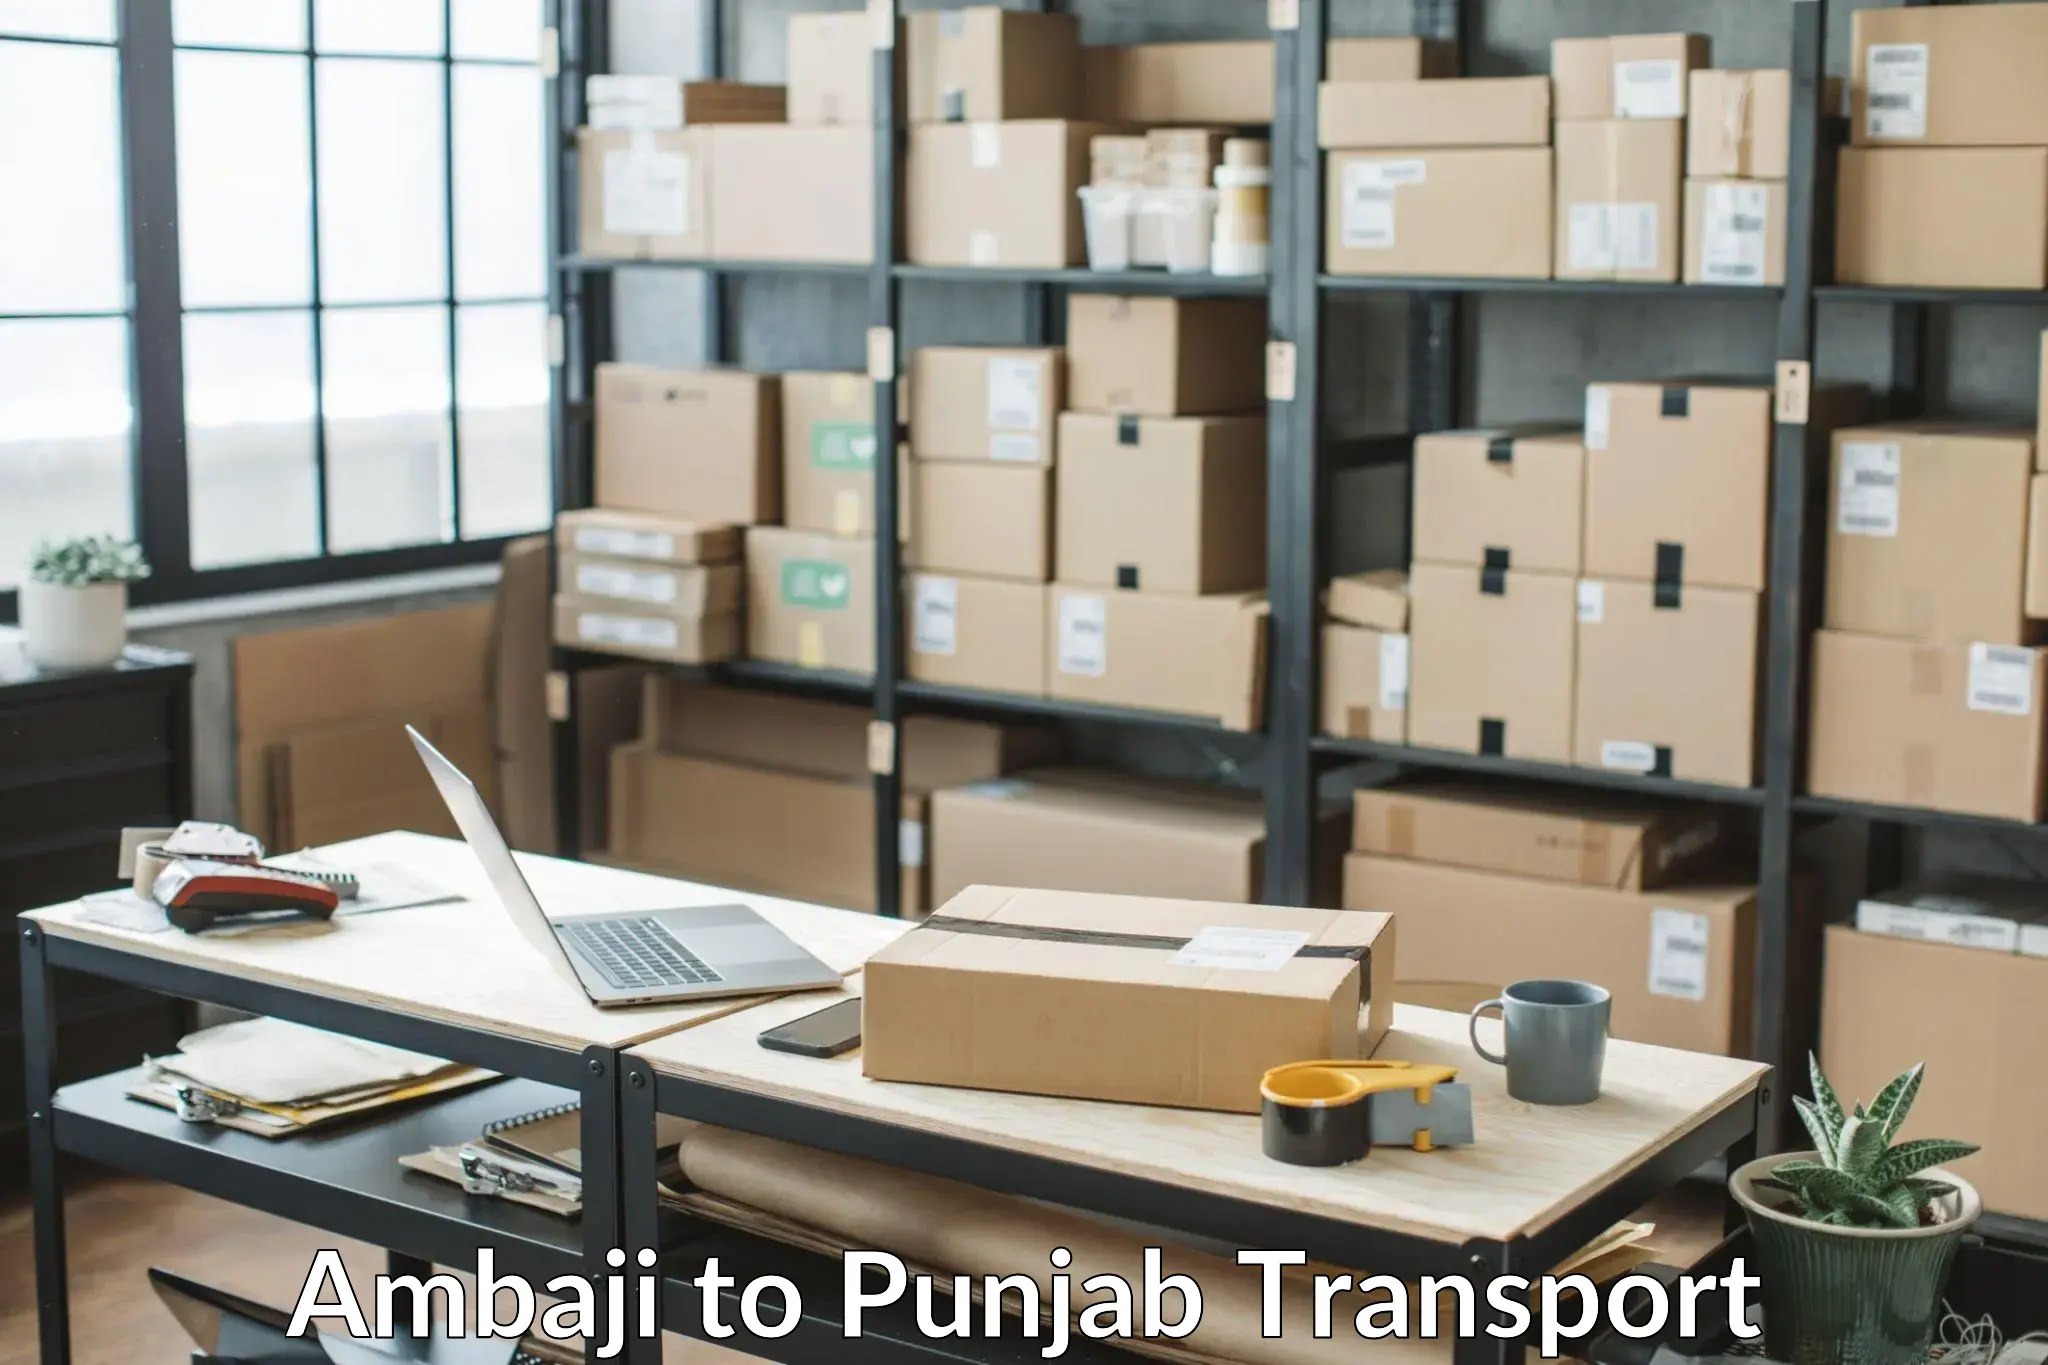 Express transport services Ambaji to Punjab